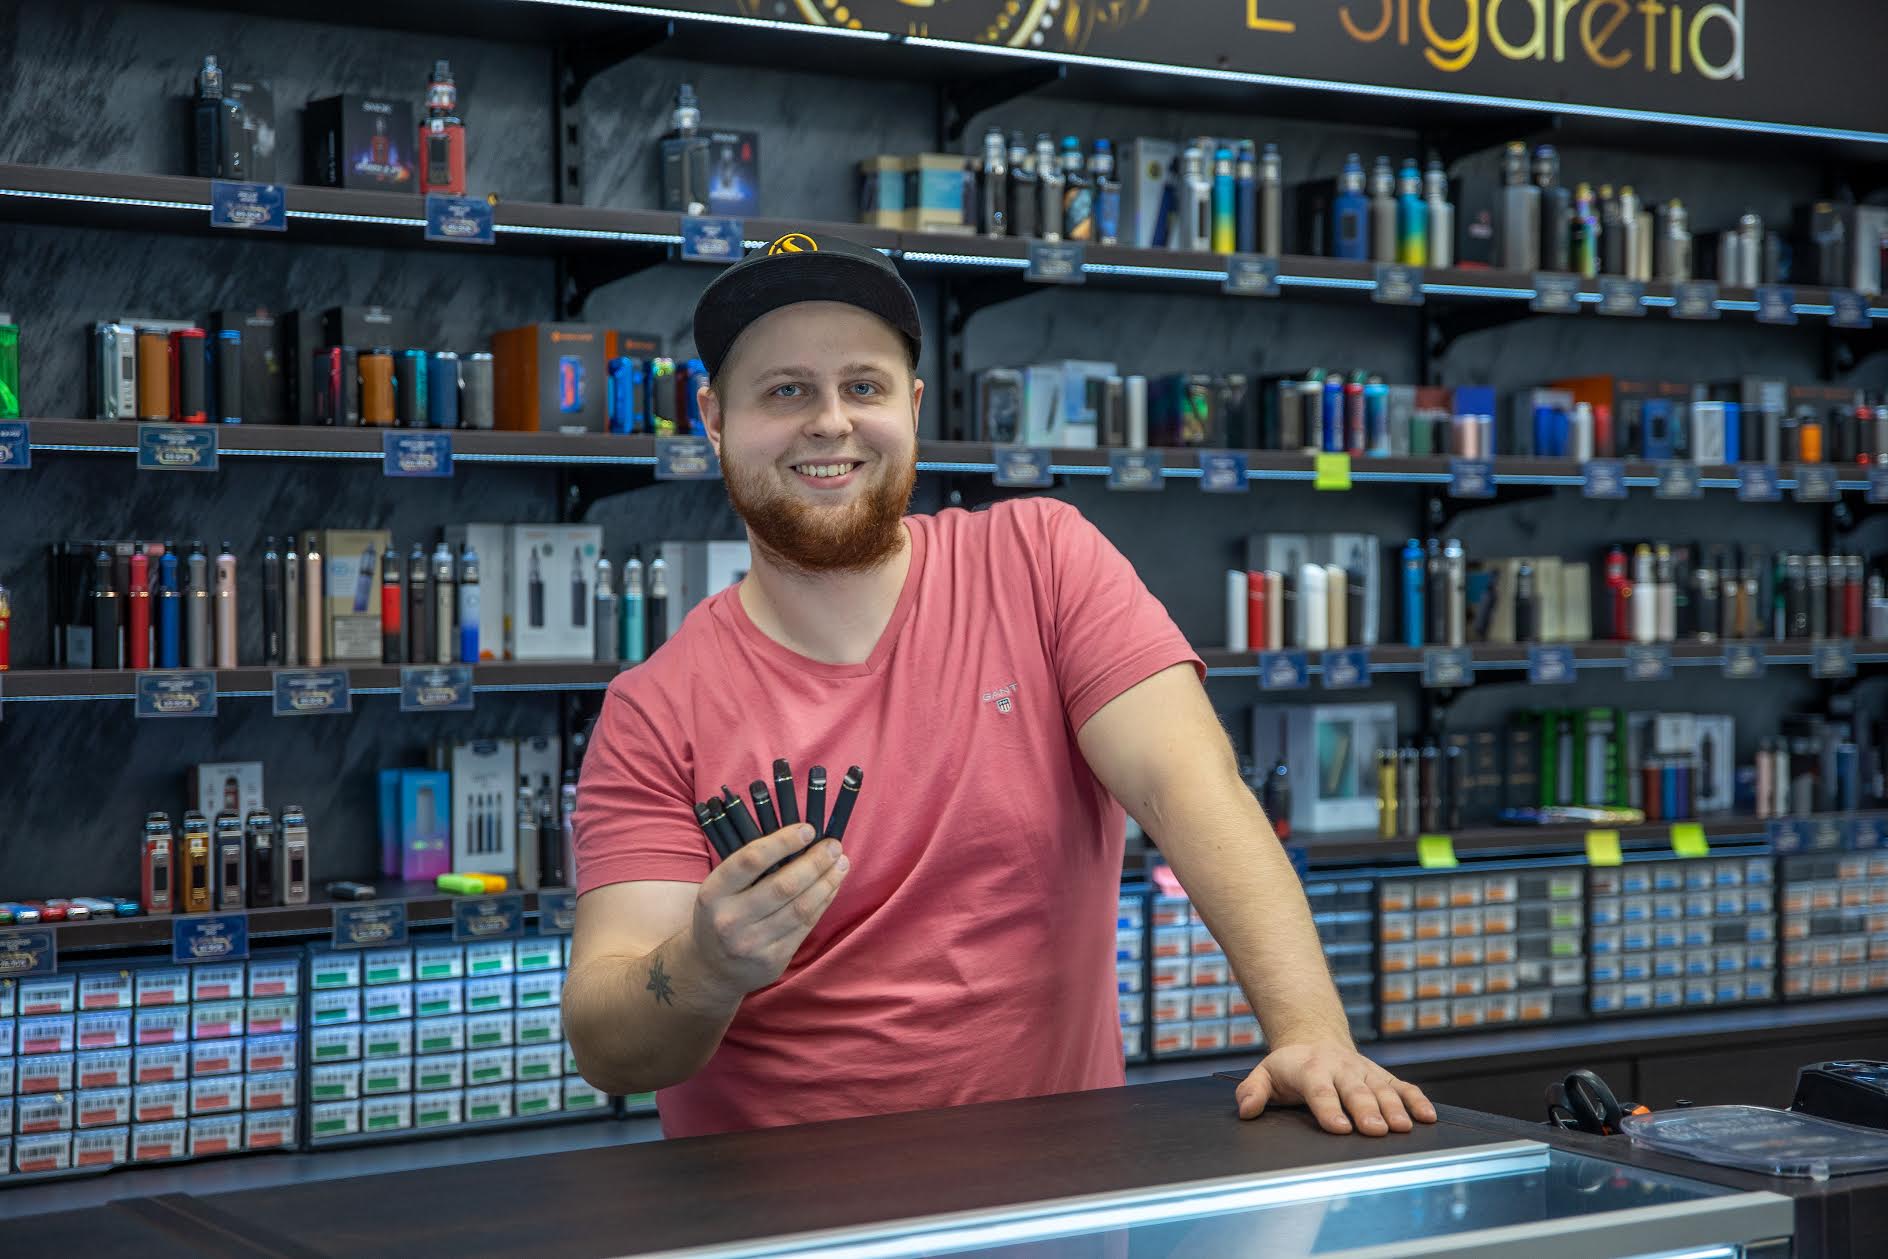 Kagukeskuses toimetava VeipLuxi müügispetsialist Andreas Kuhi kutsub kliente üles poodi tagastama  tühjaks saanud e-sigareti seadmeid. Fotol näitab ta valikut tagasi toodud e-sigarettidest. Foto: AIGAR NAGEL